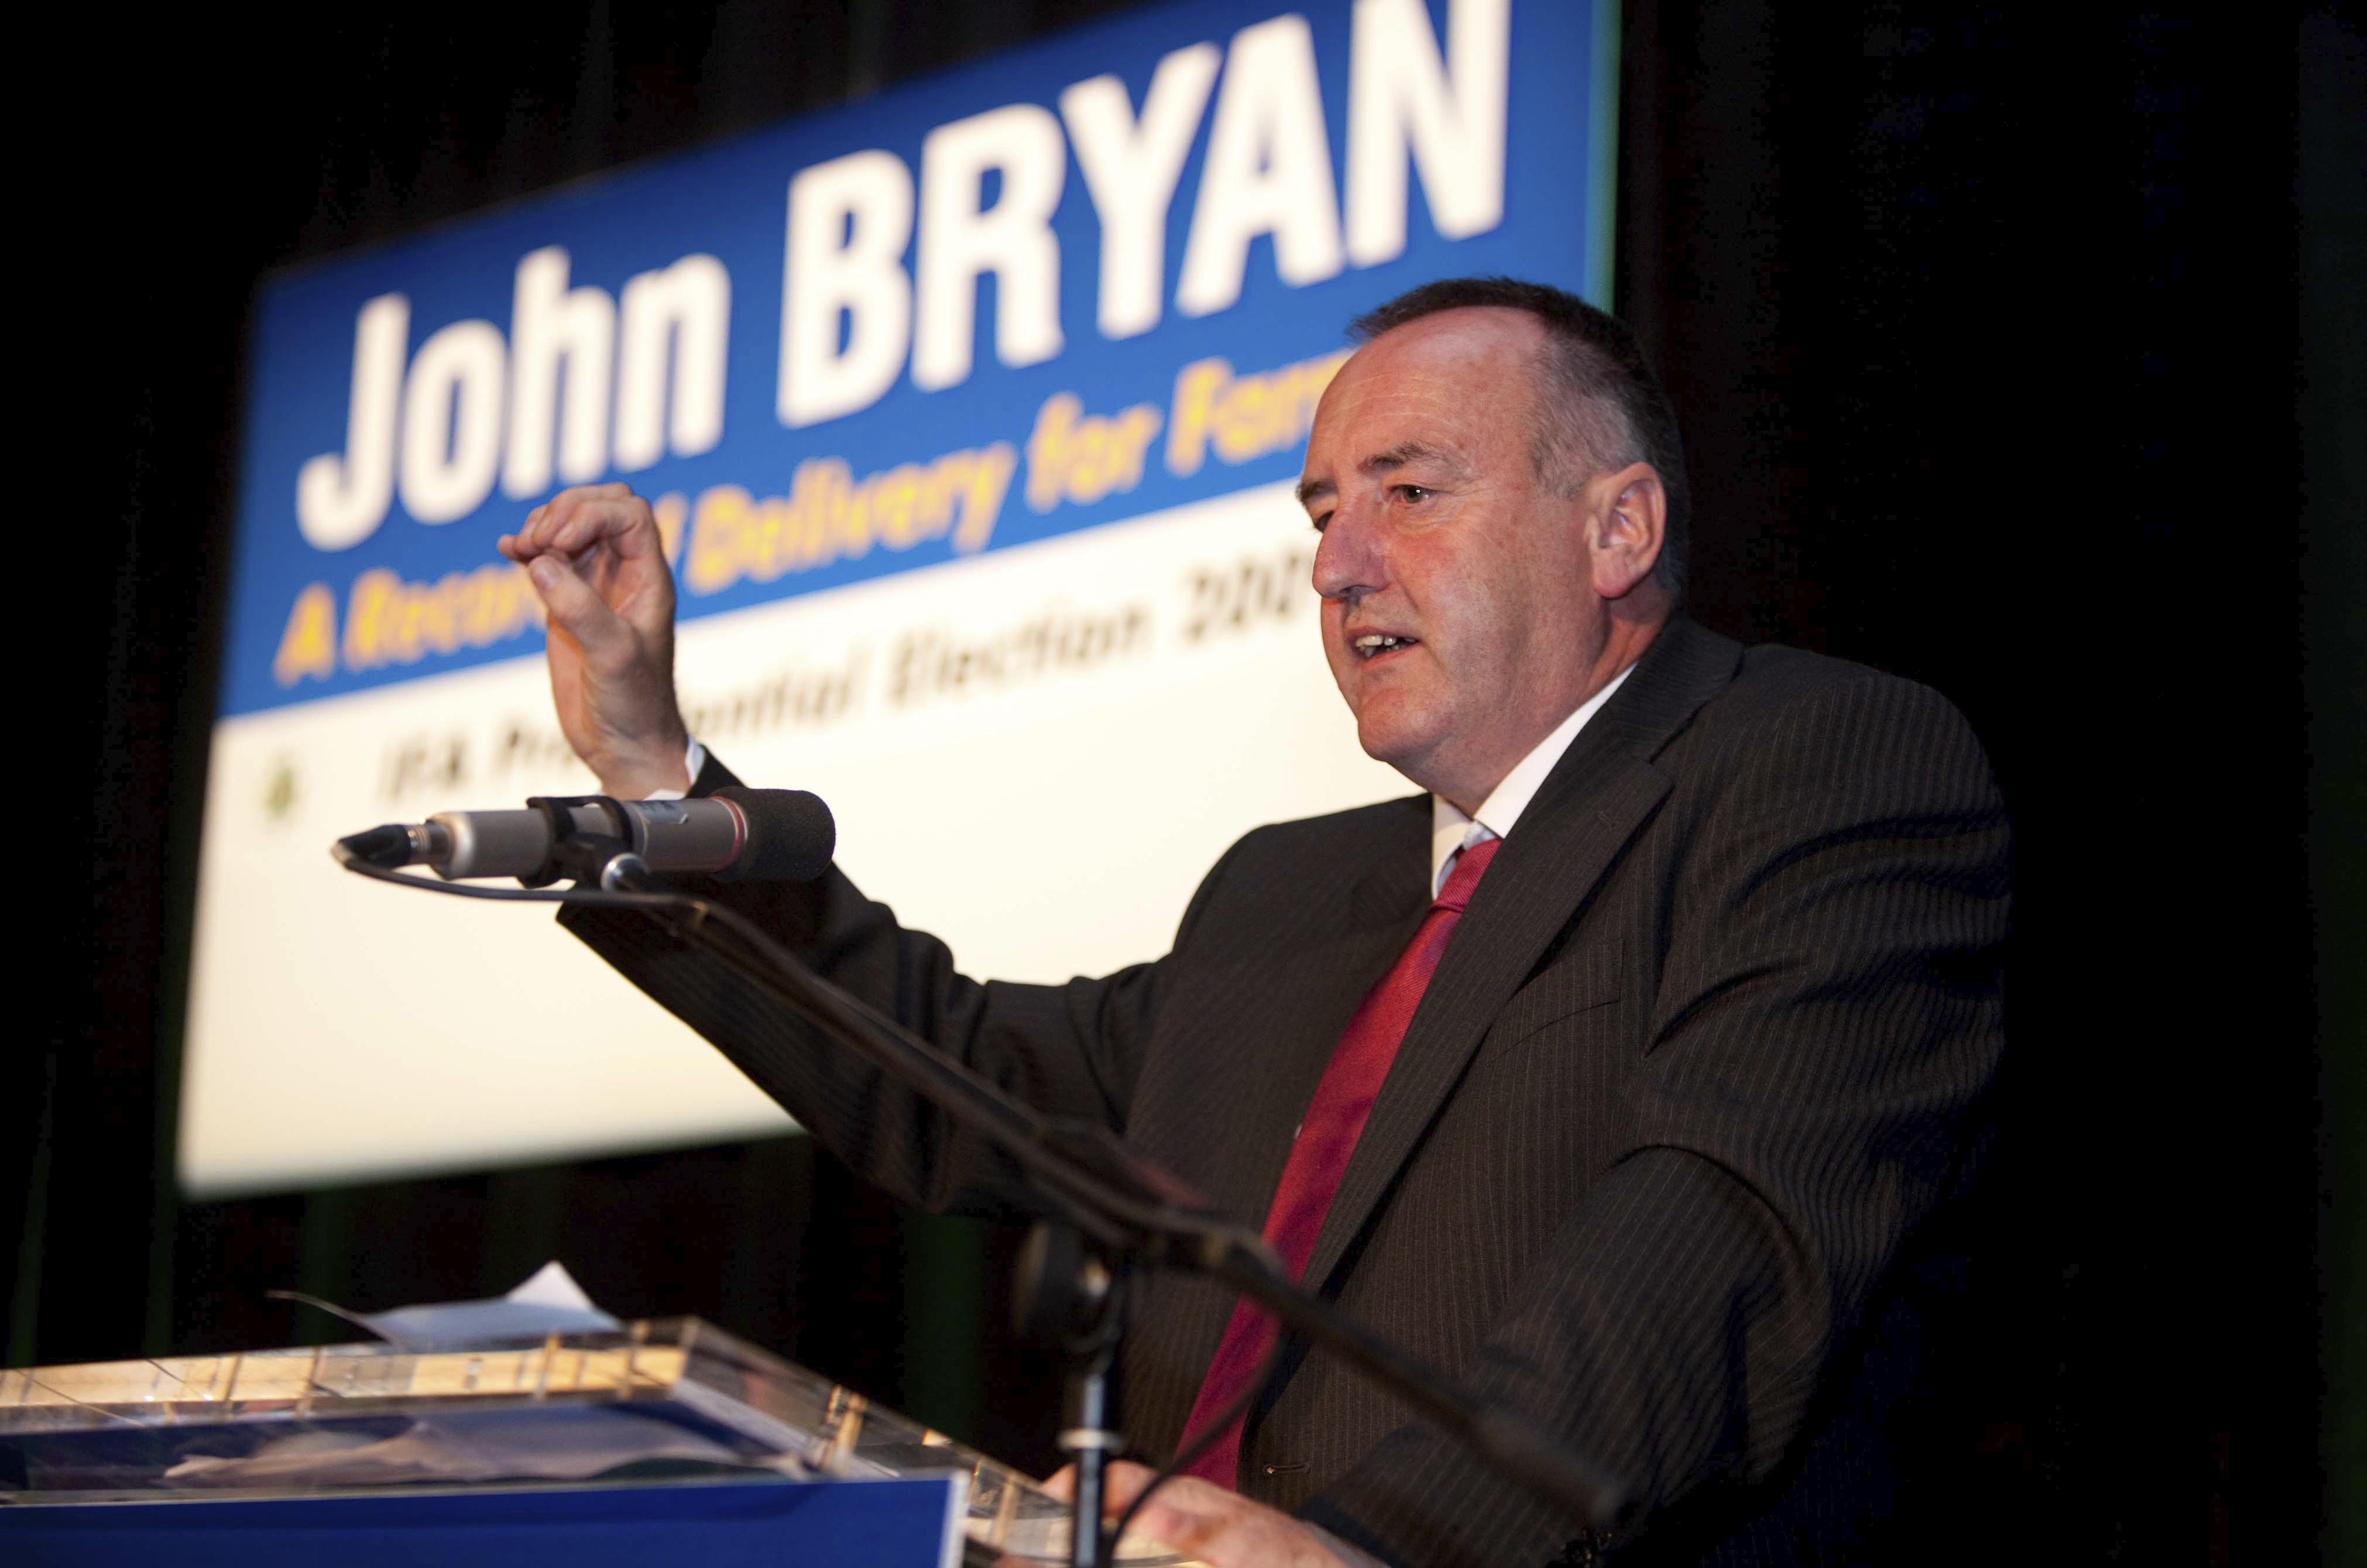 John Bryan